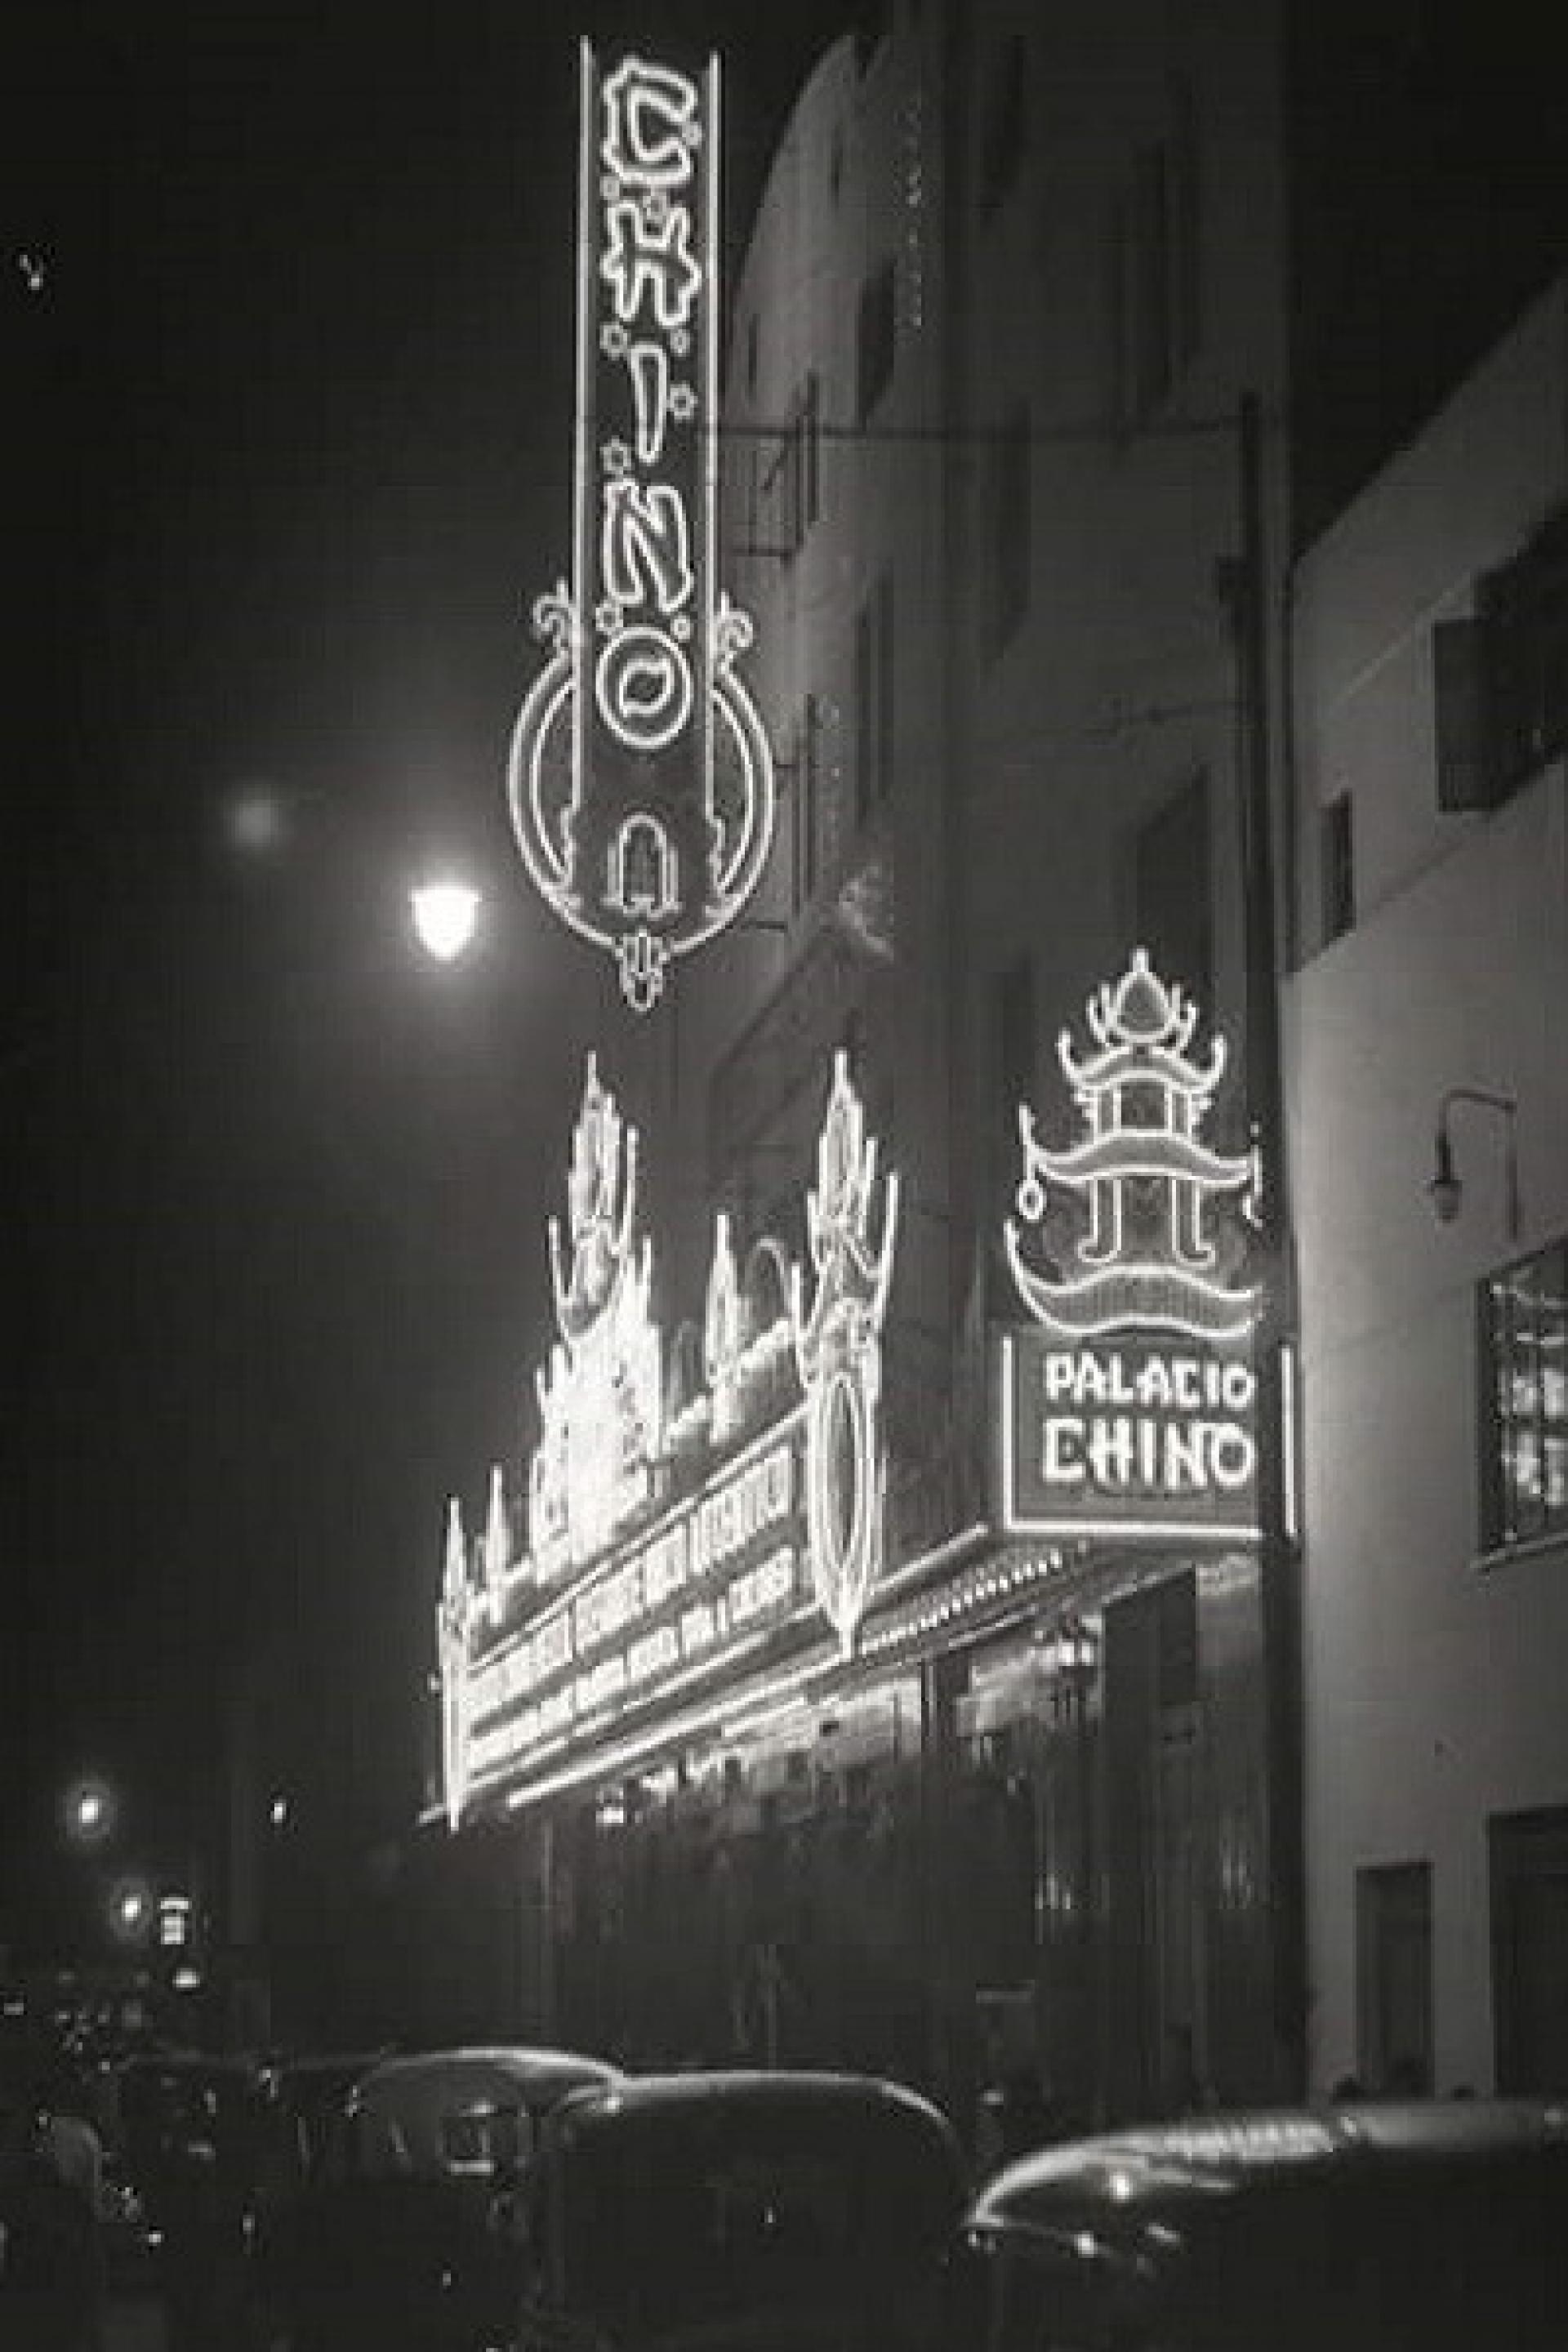 Cine Palacio Chino (1940). | Photo via La Ciudad en el Tiempo